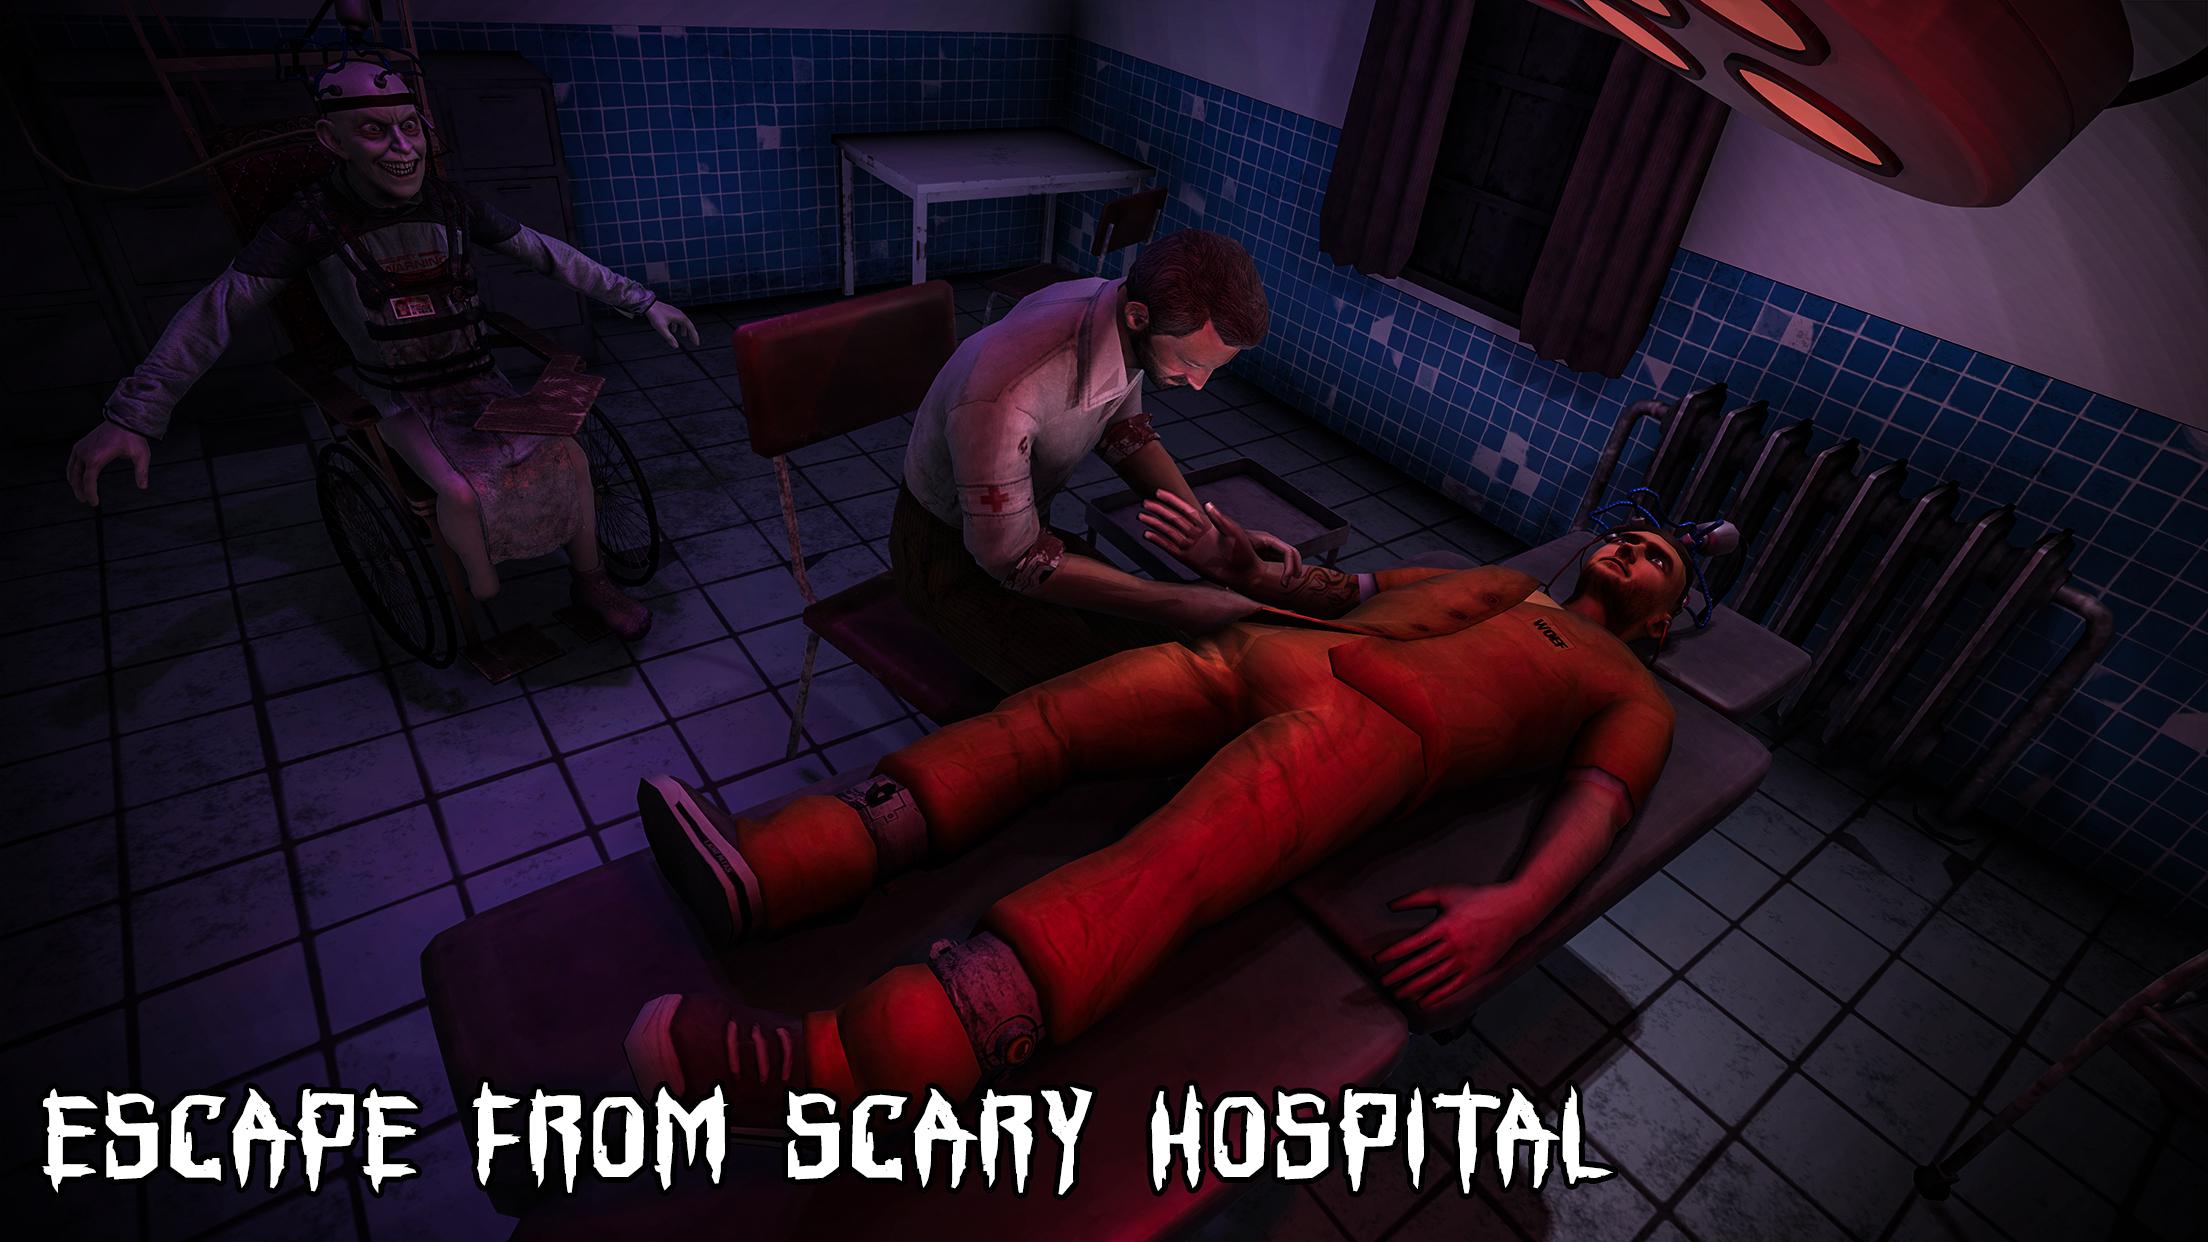 Baixar e jogar Scary Hospital Horror no PC com MuMu Player